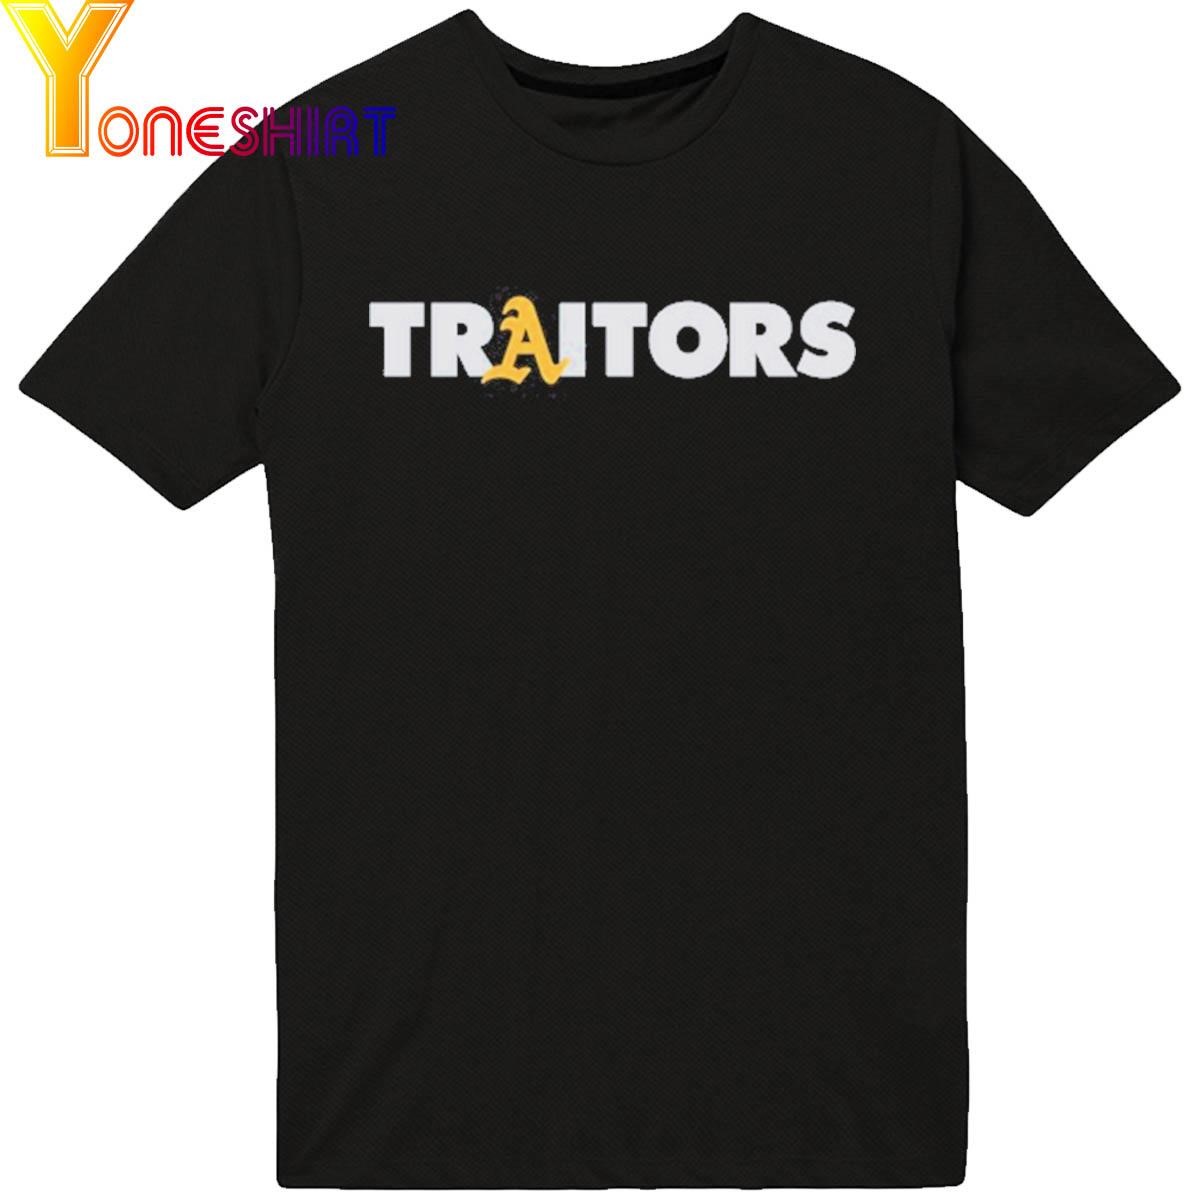 Oakland A's Traitors shirt